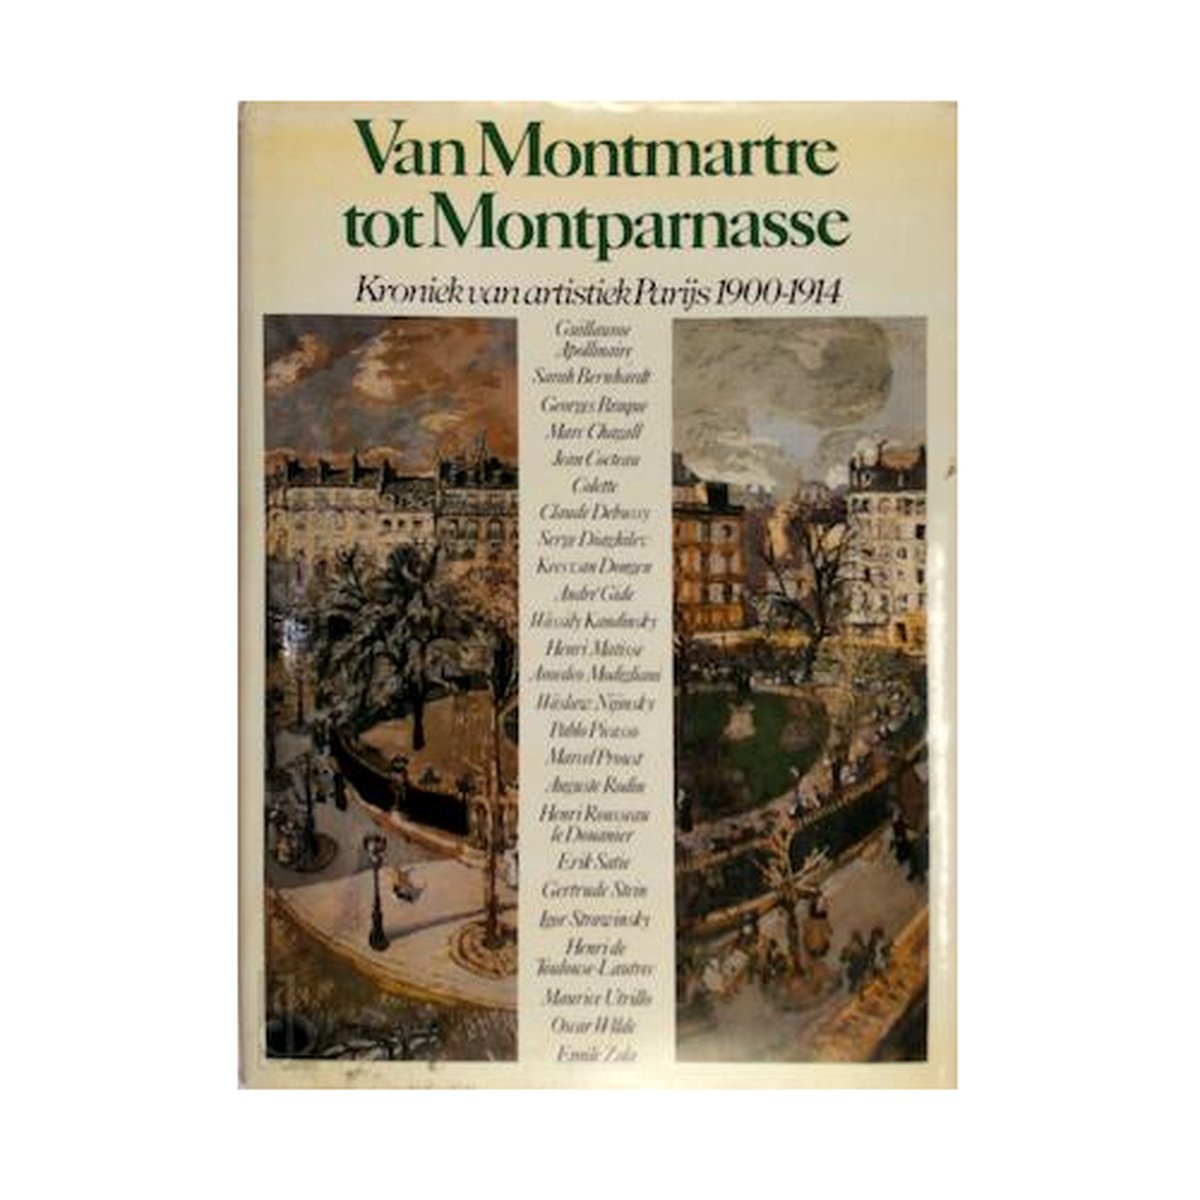 Van Montmartre tot Montparnasse